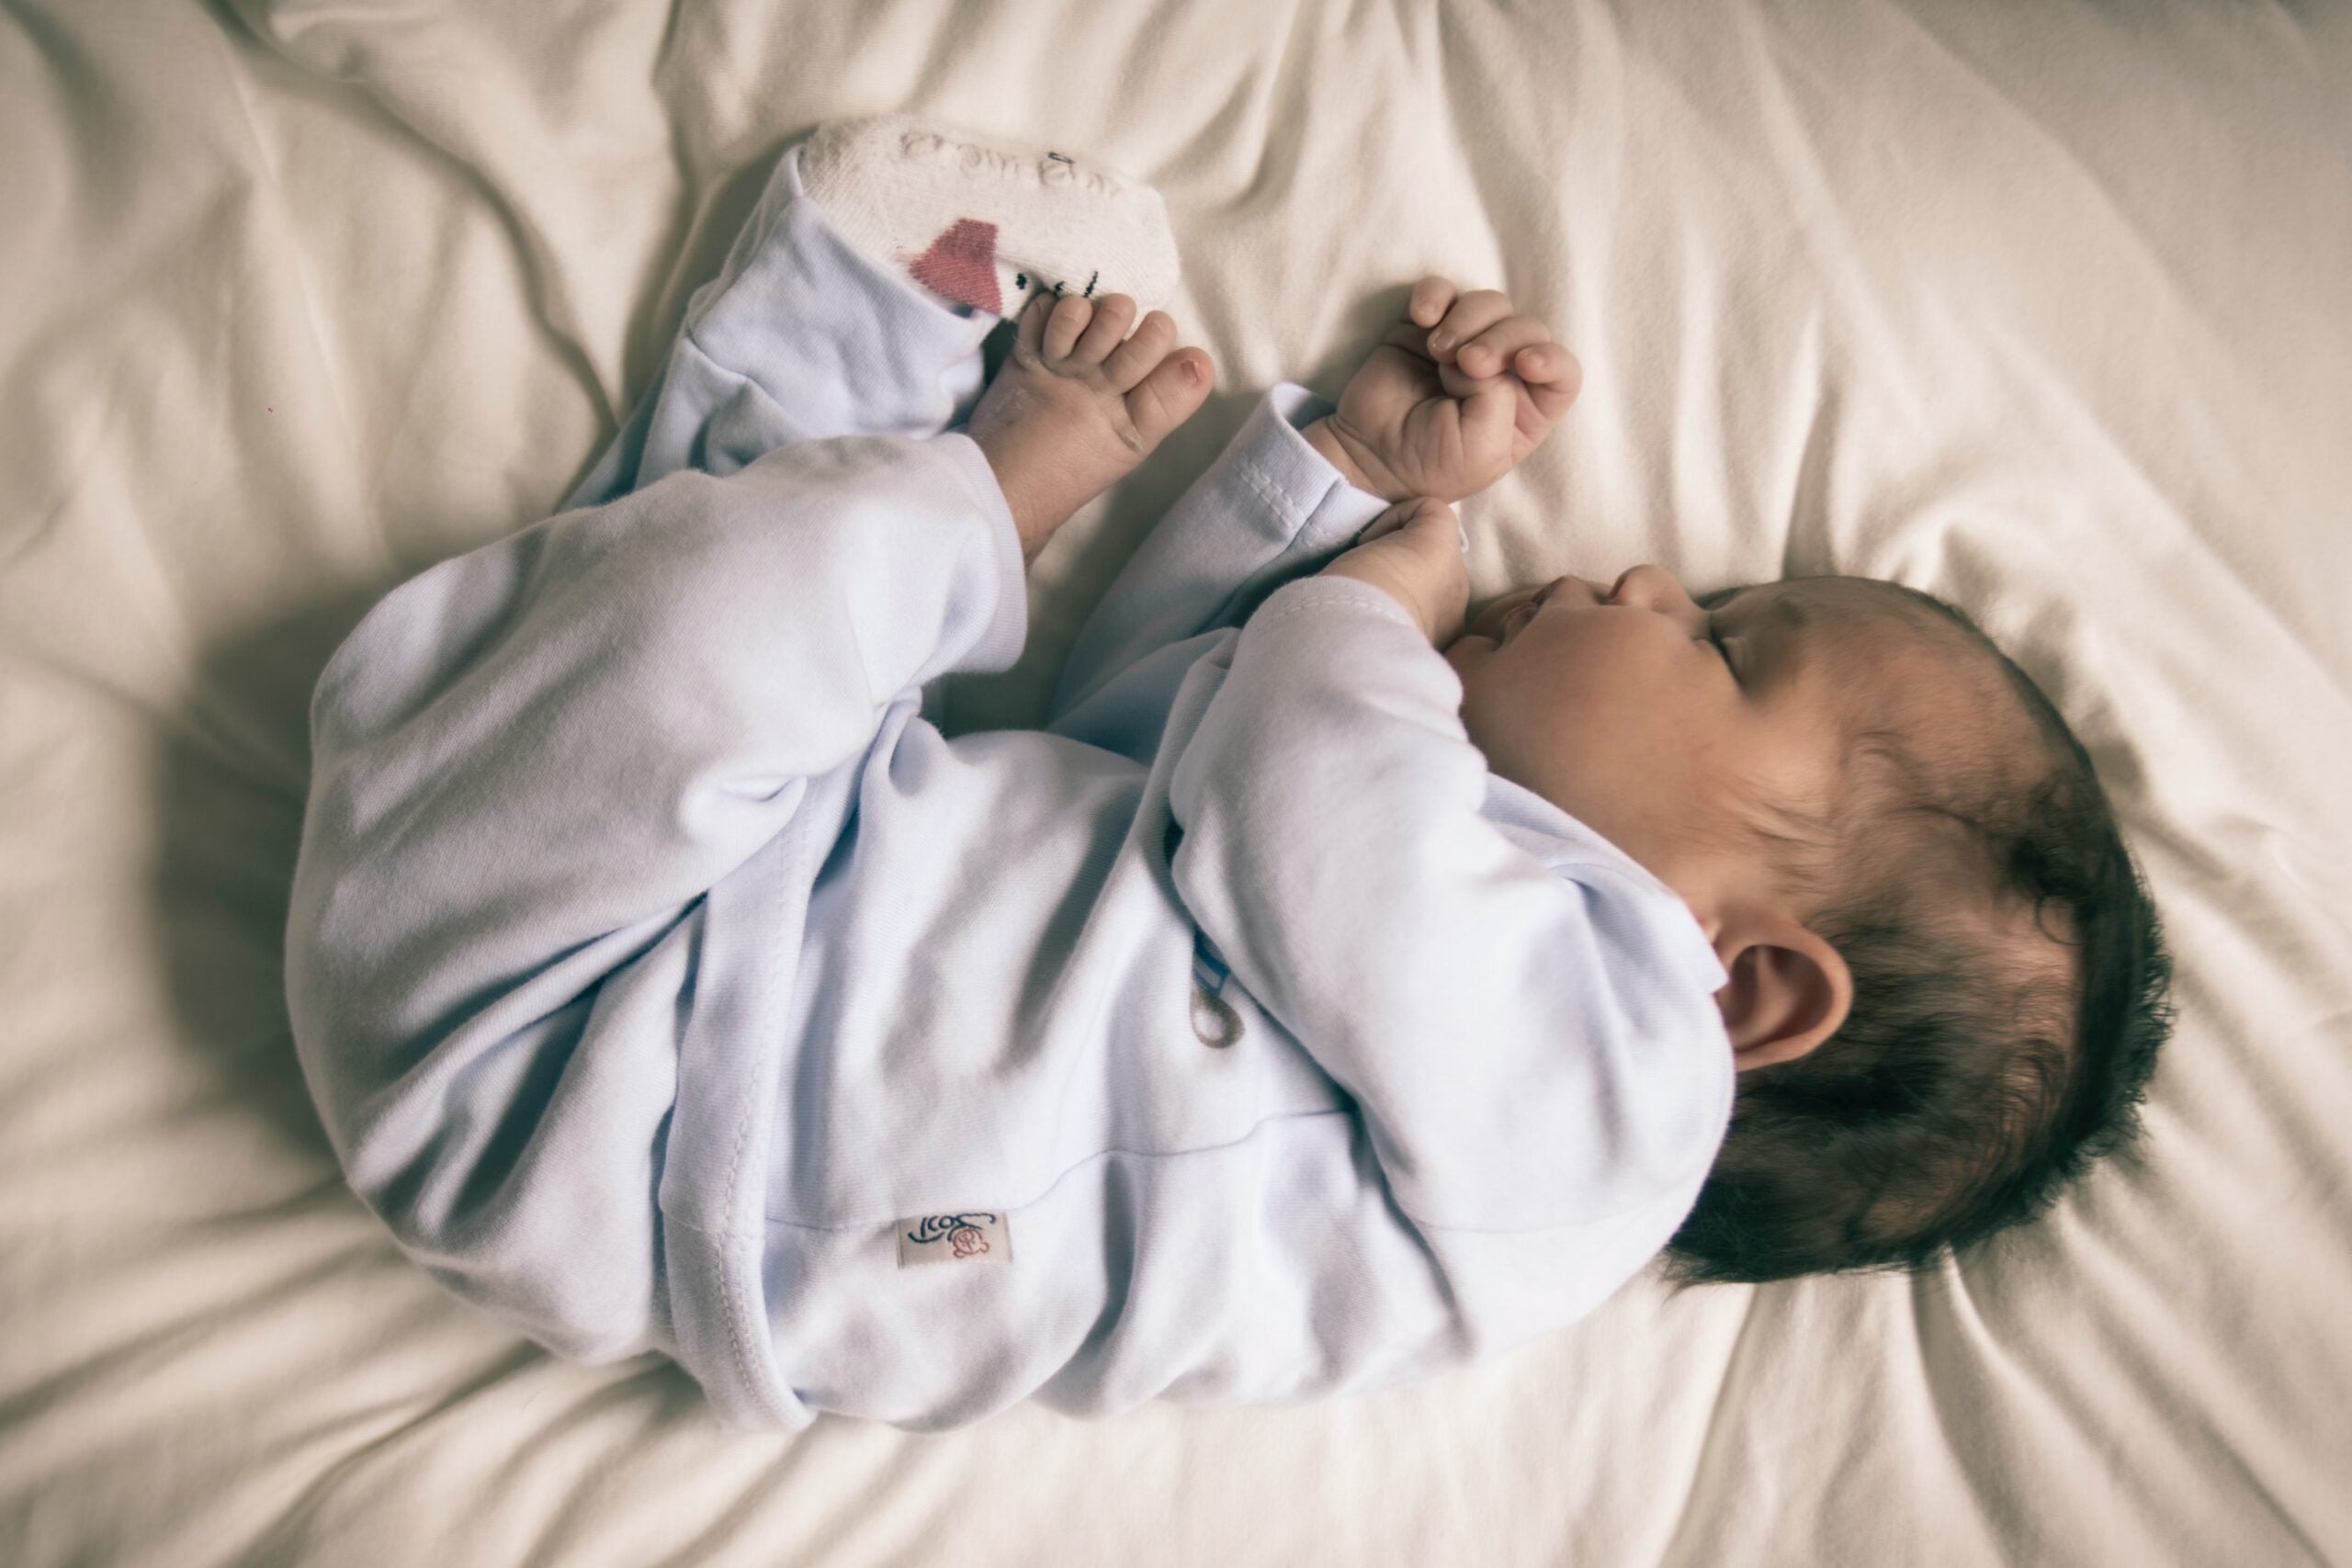 Cómo dormir a un bebé de 6 meses